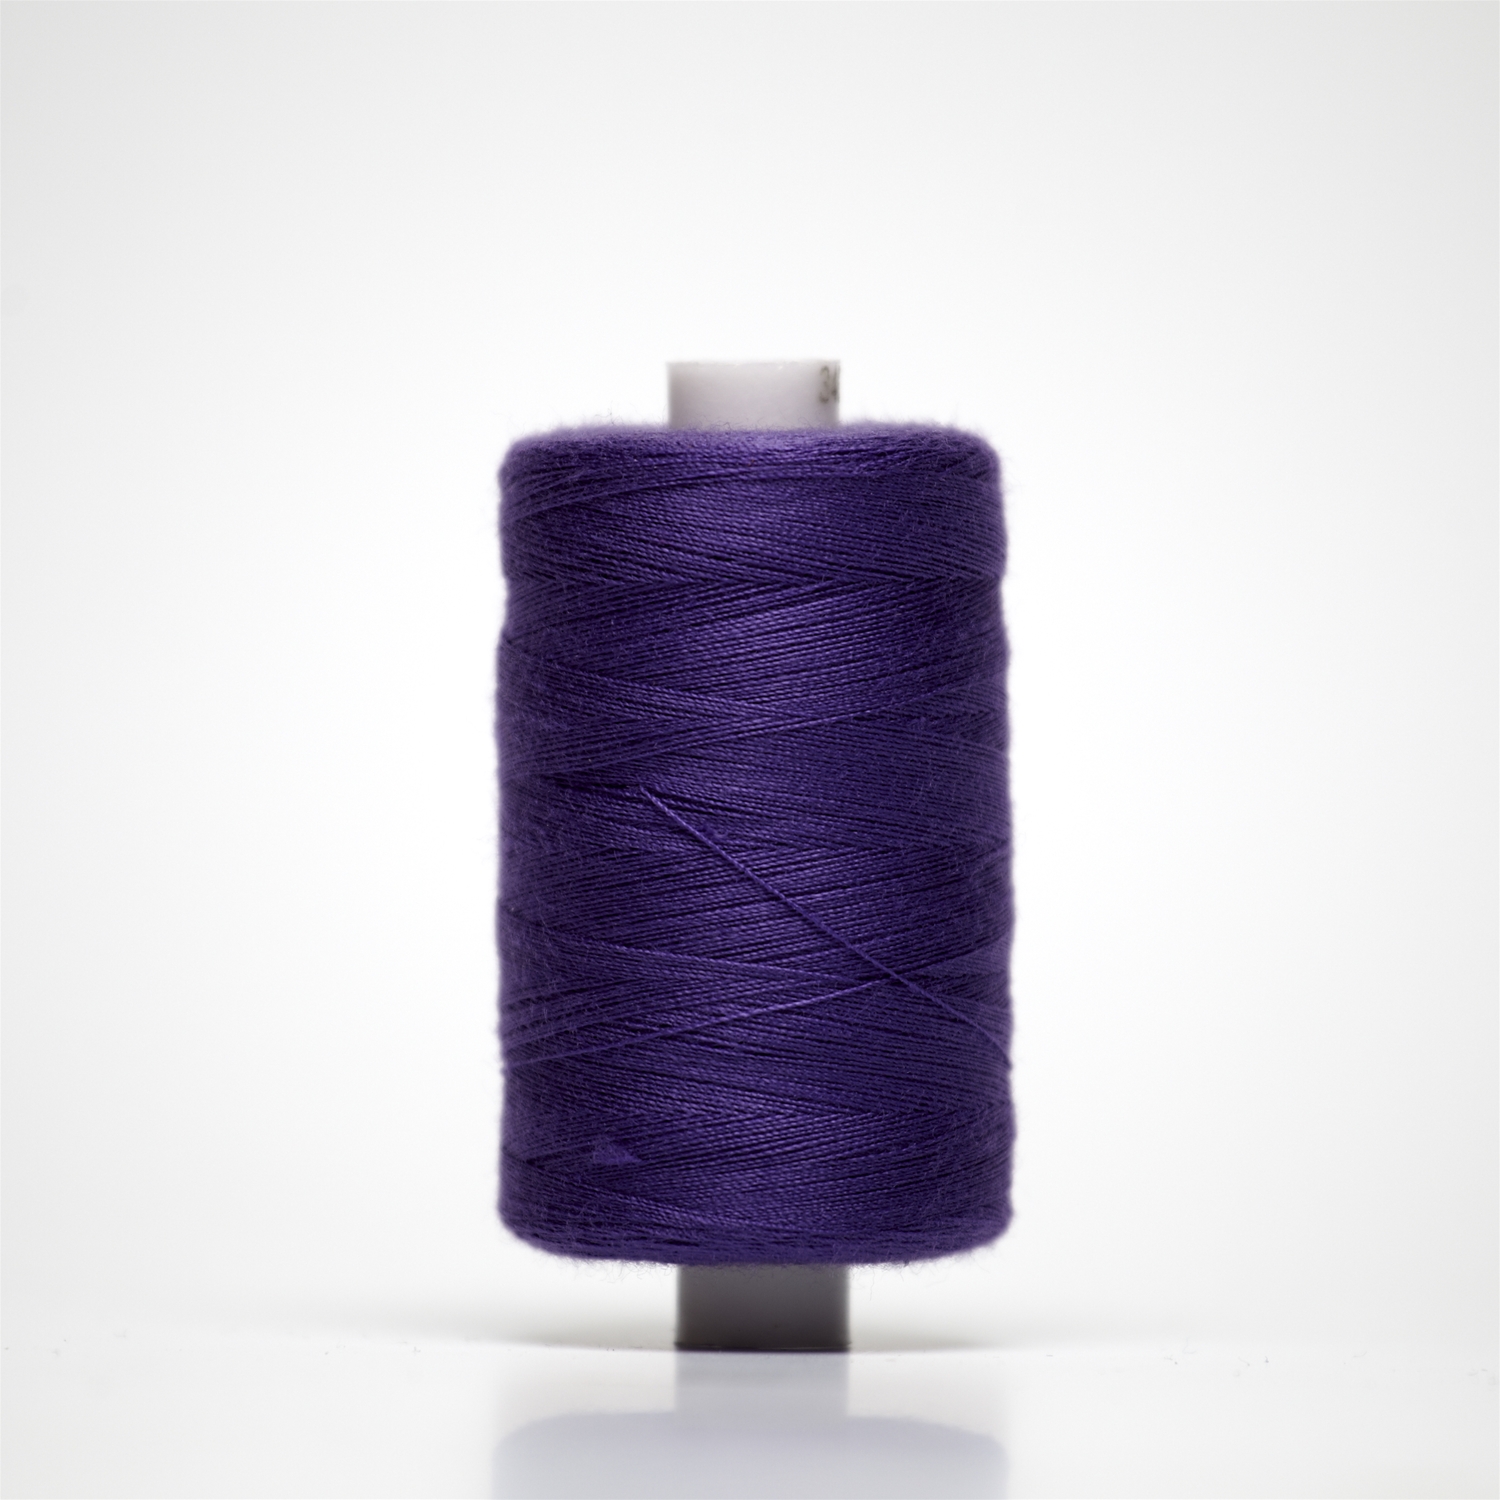 34070 | 1000y Budget Sewing Thread